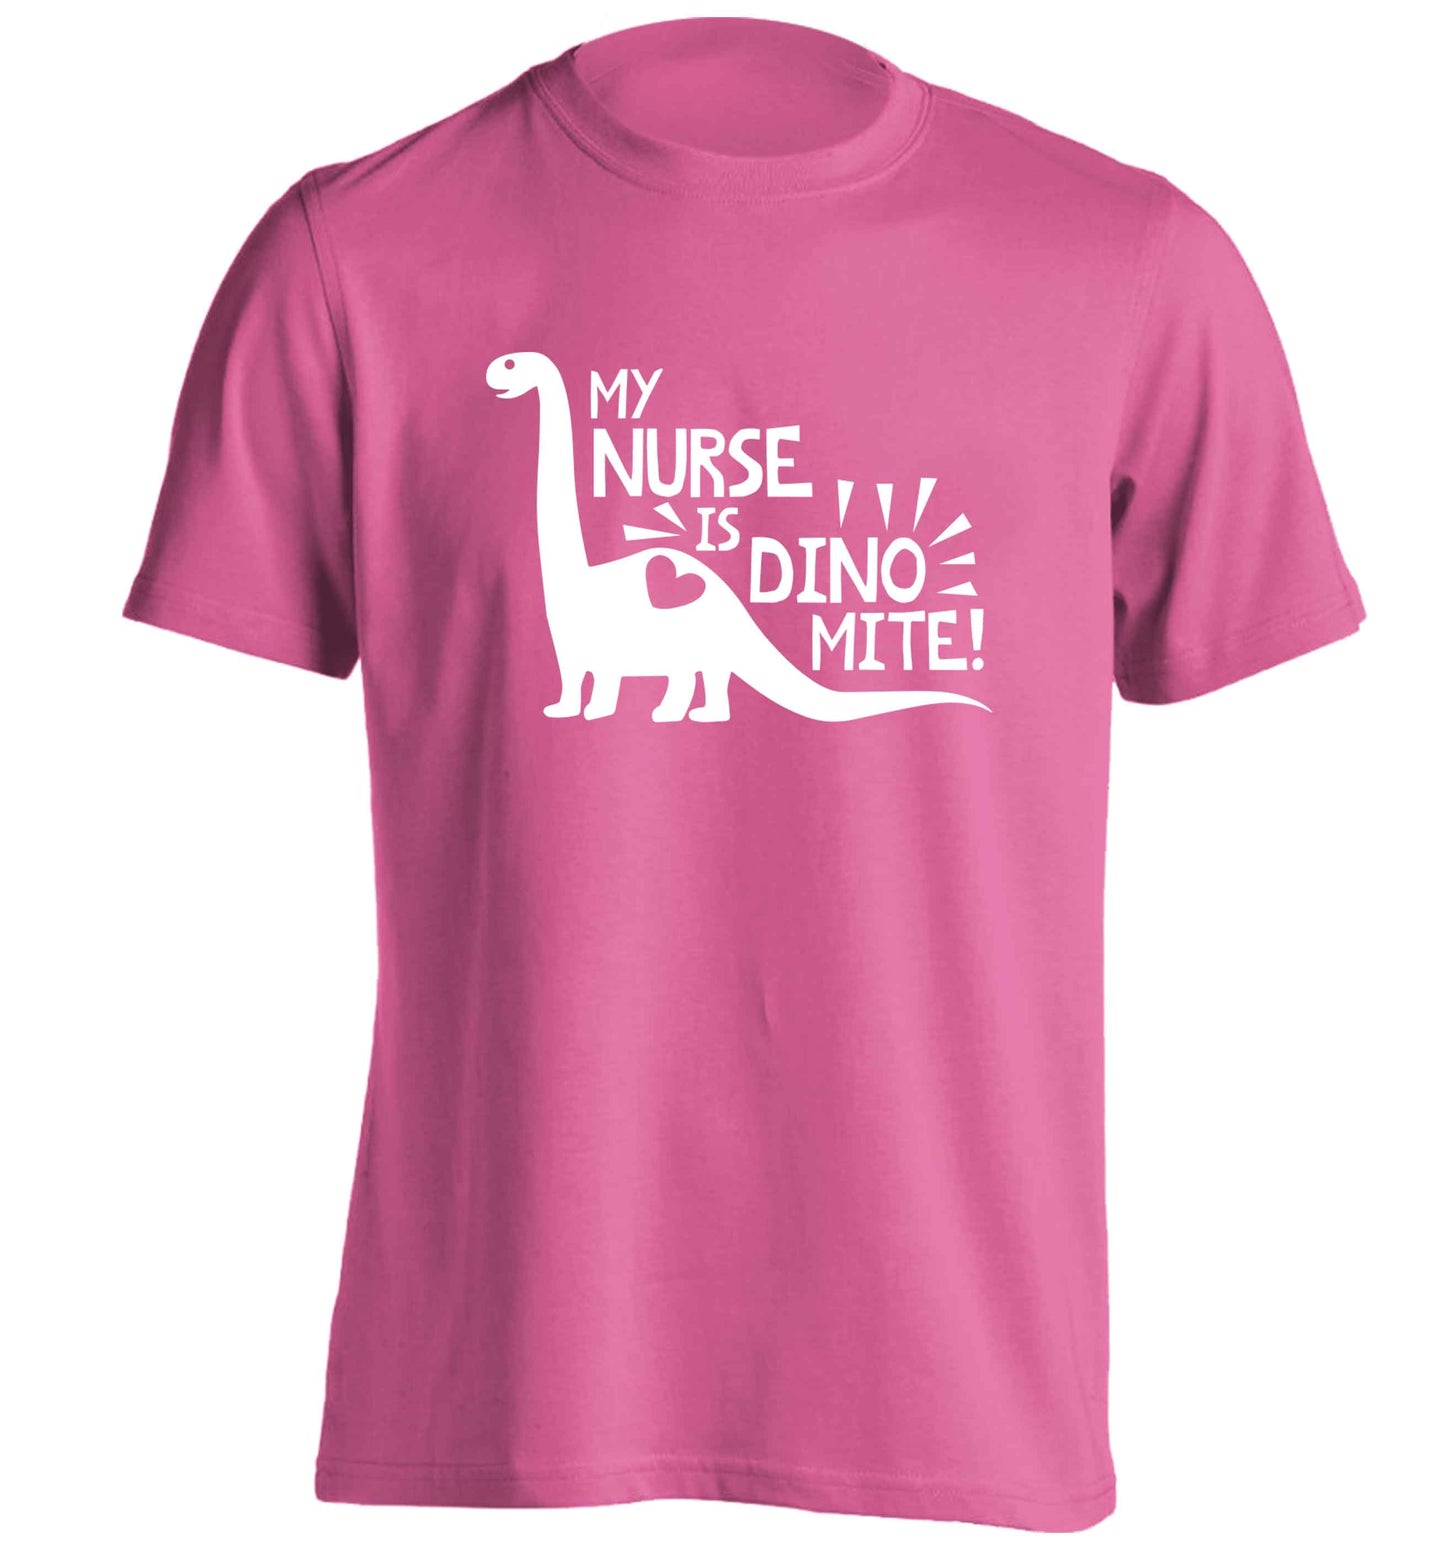 My nurse is dinomite! adults unisex pink Tshirt 2XL